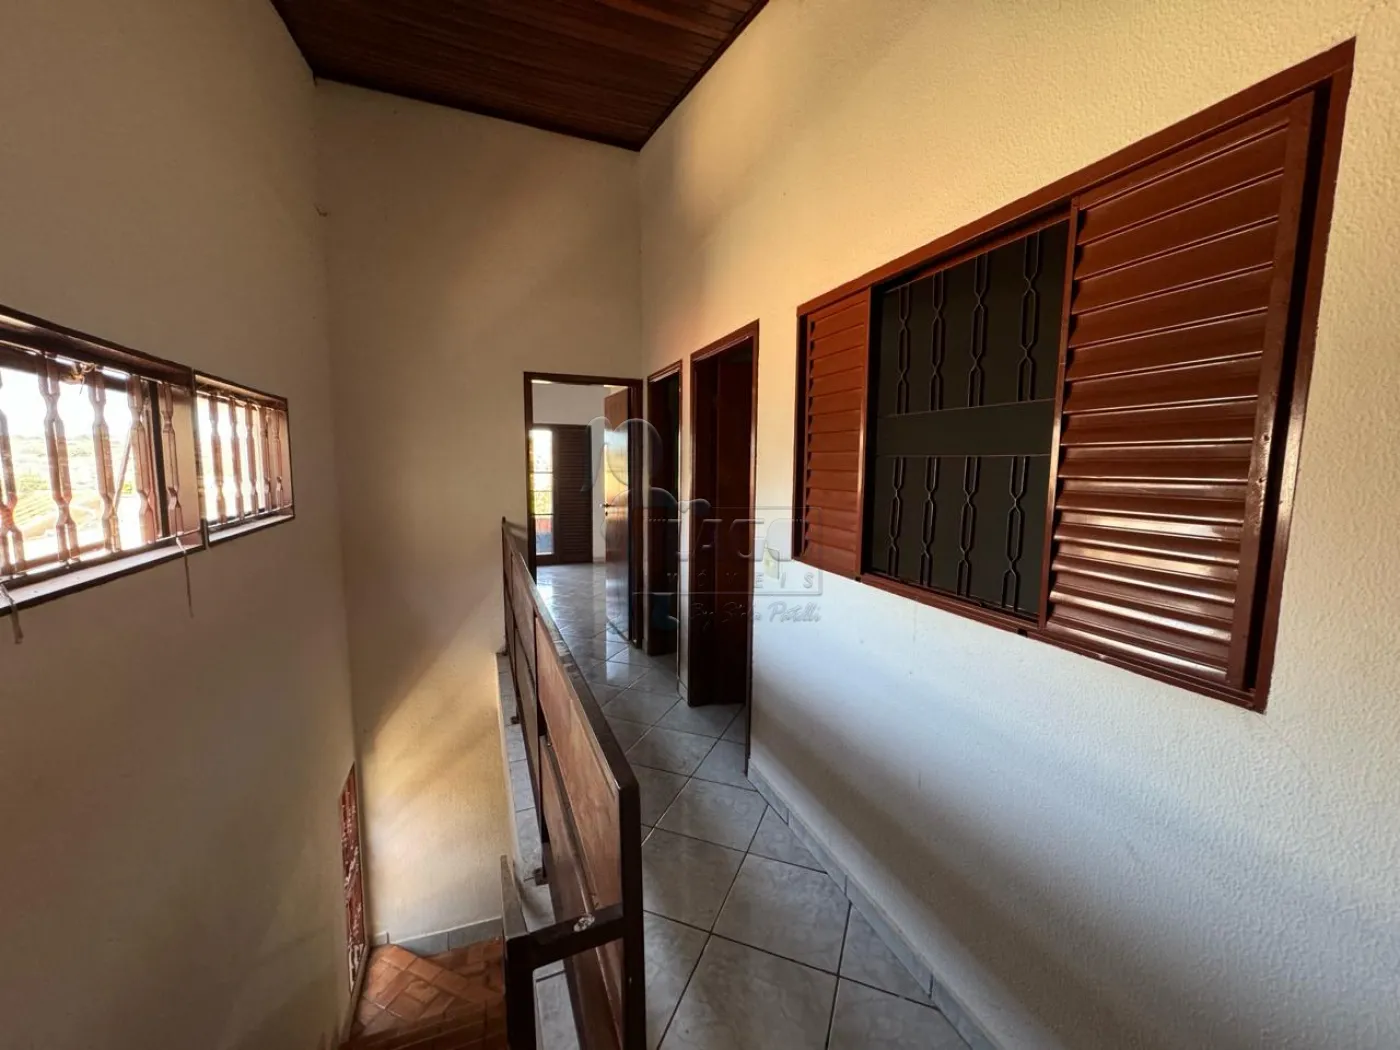 Alugar Casas / Padrão em Ribeirão Preto R$ 1.800,00 - Foto 8